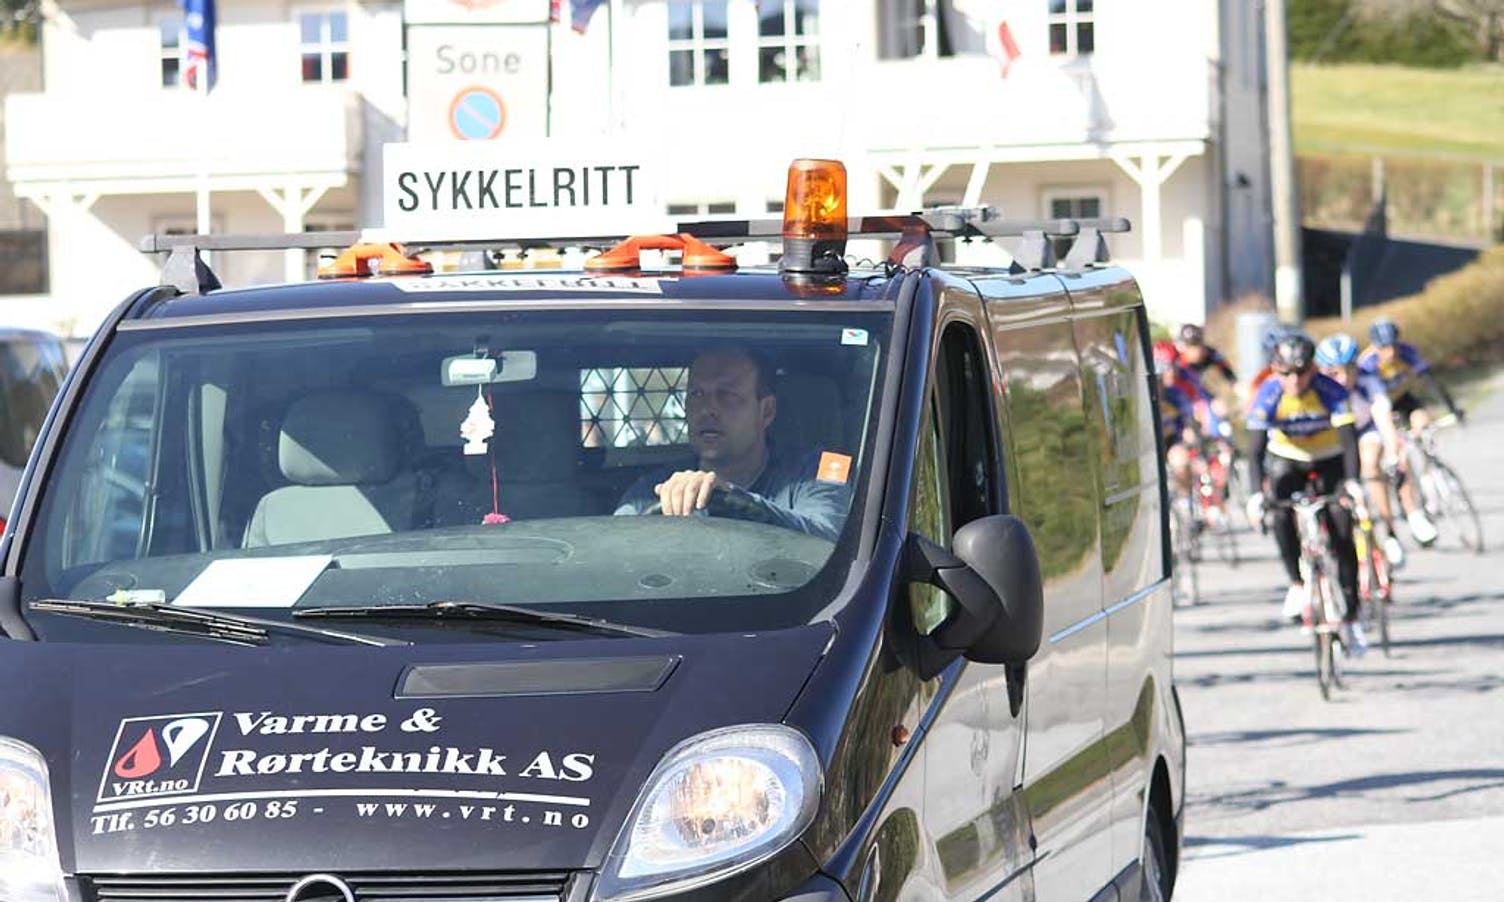 Stian Færevaag kjørte følgebil.  (Foto: KVB)